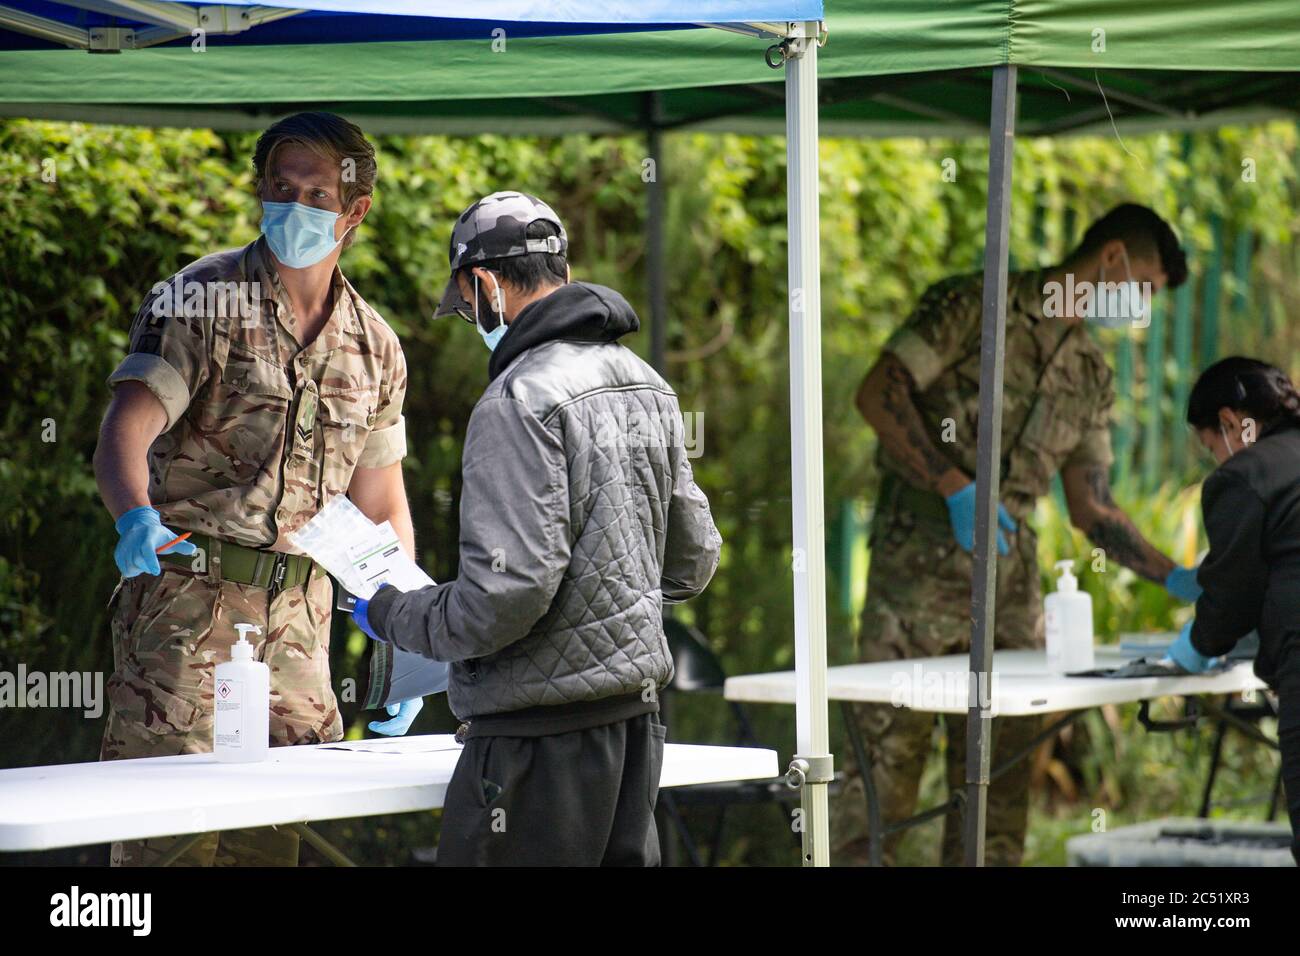 Membri dell'esercito in un centro di test Covid-19 a Spinney Hill Park a Leicester, dopo che il Segretario della Salute Matt Hancock ha imposto un blocco locale a seguito di un picco nei casi di coronavirus nella città. Foto Stock